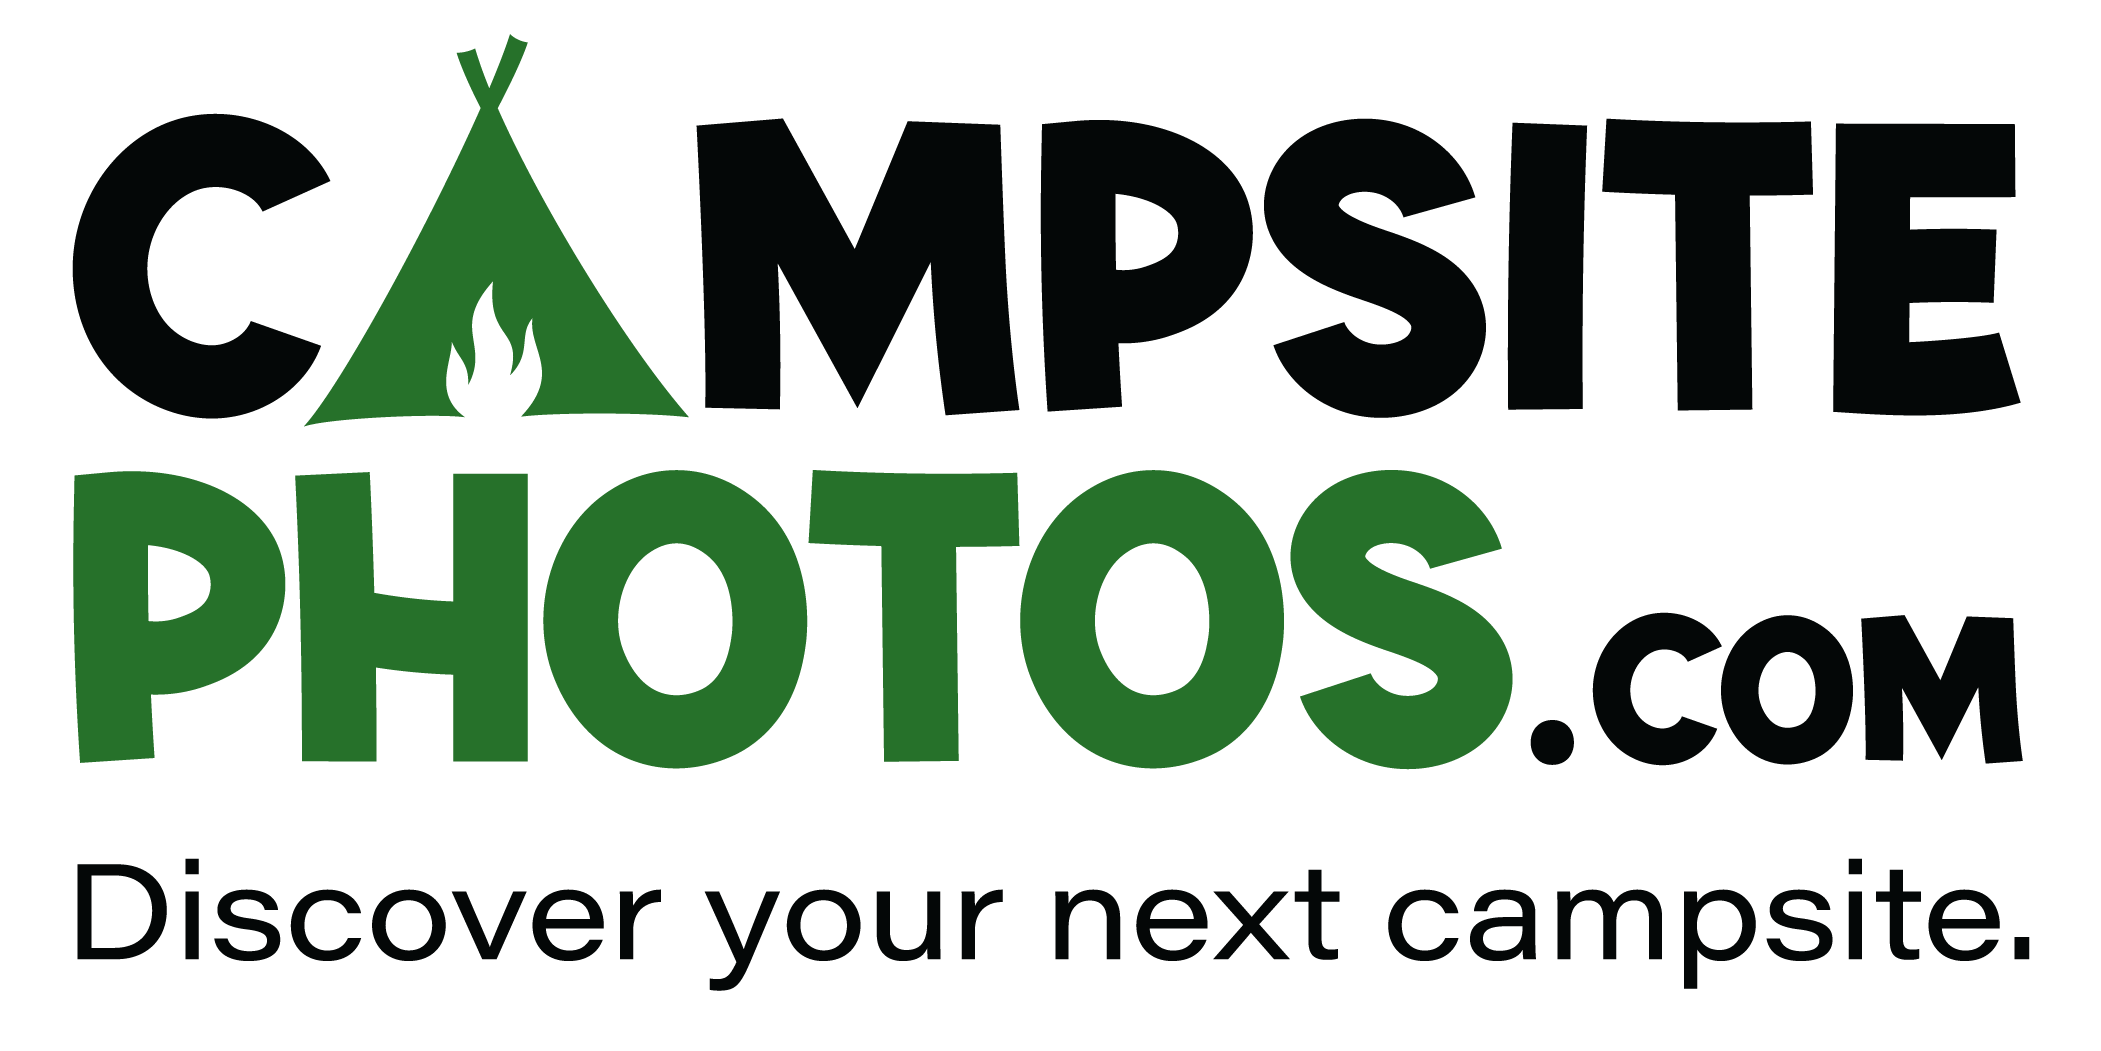 CampsitePhotos.com